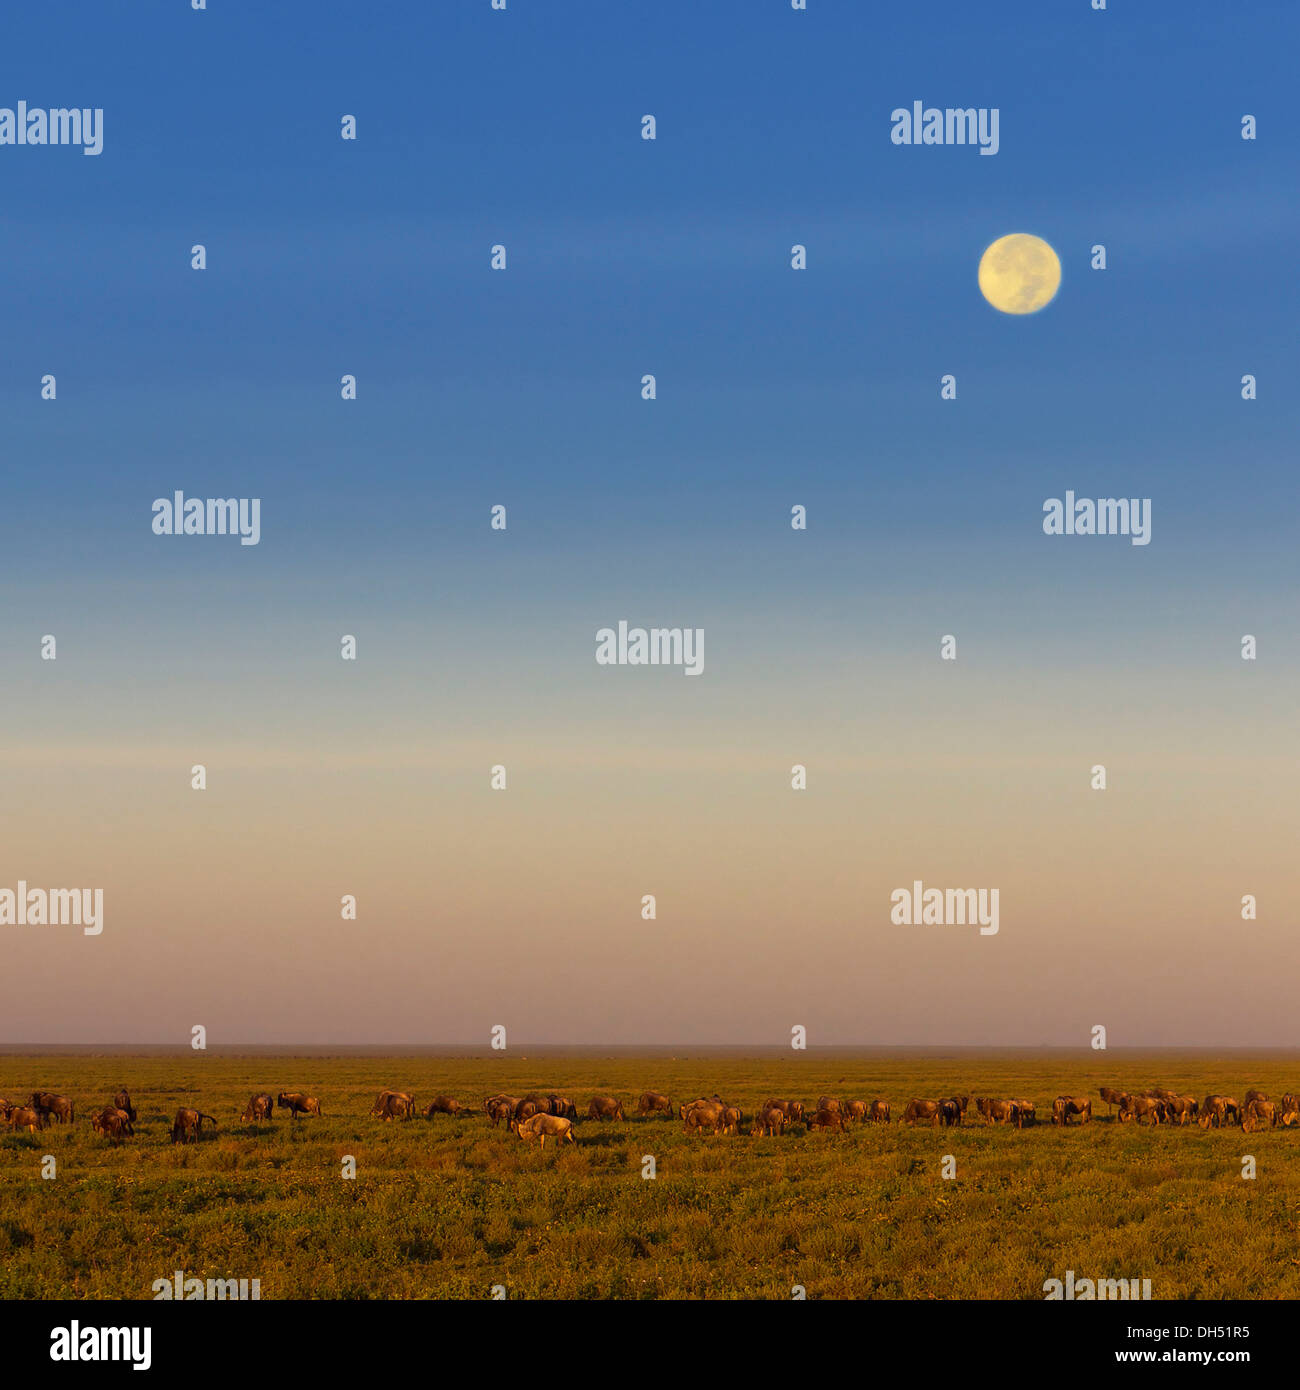 La migration de troupeau de gnous bleu (Connochaetes taurinus) pendant la pleine lune dans la savane, Serengeti, Tanzanie Banque D'Images